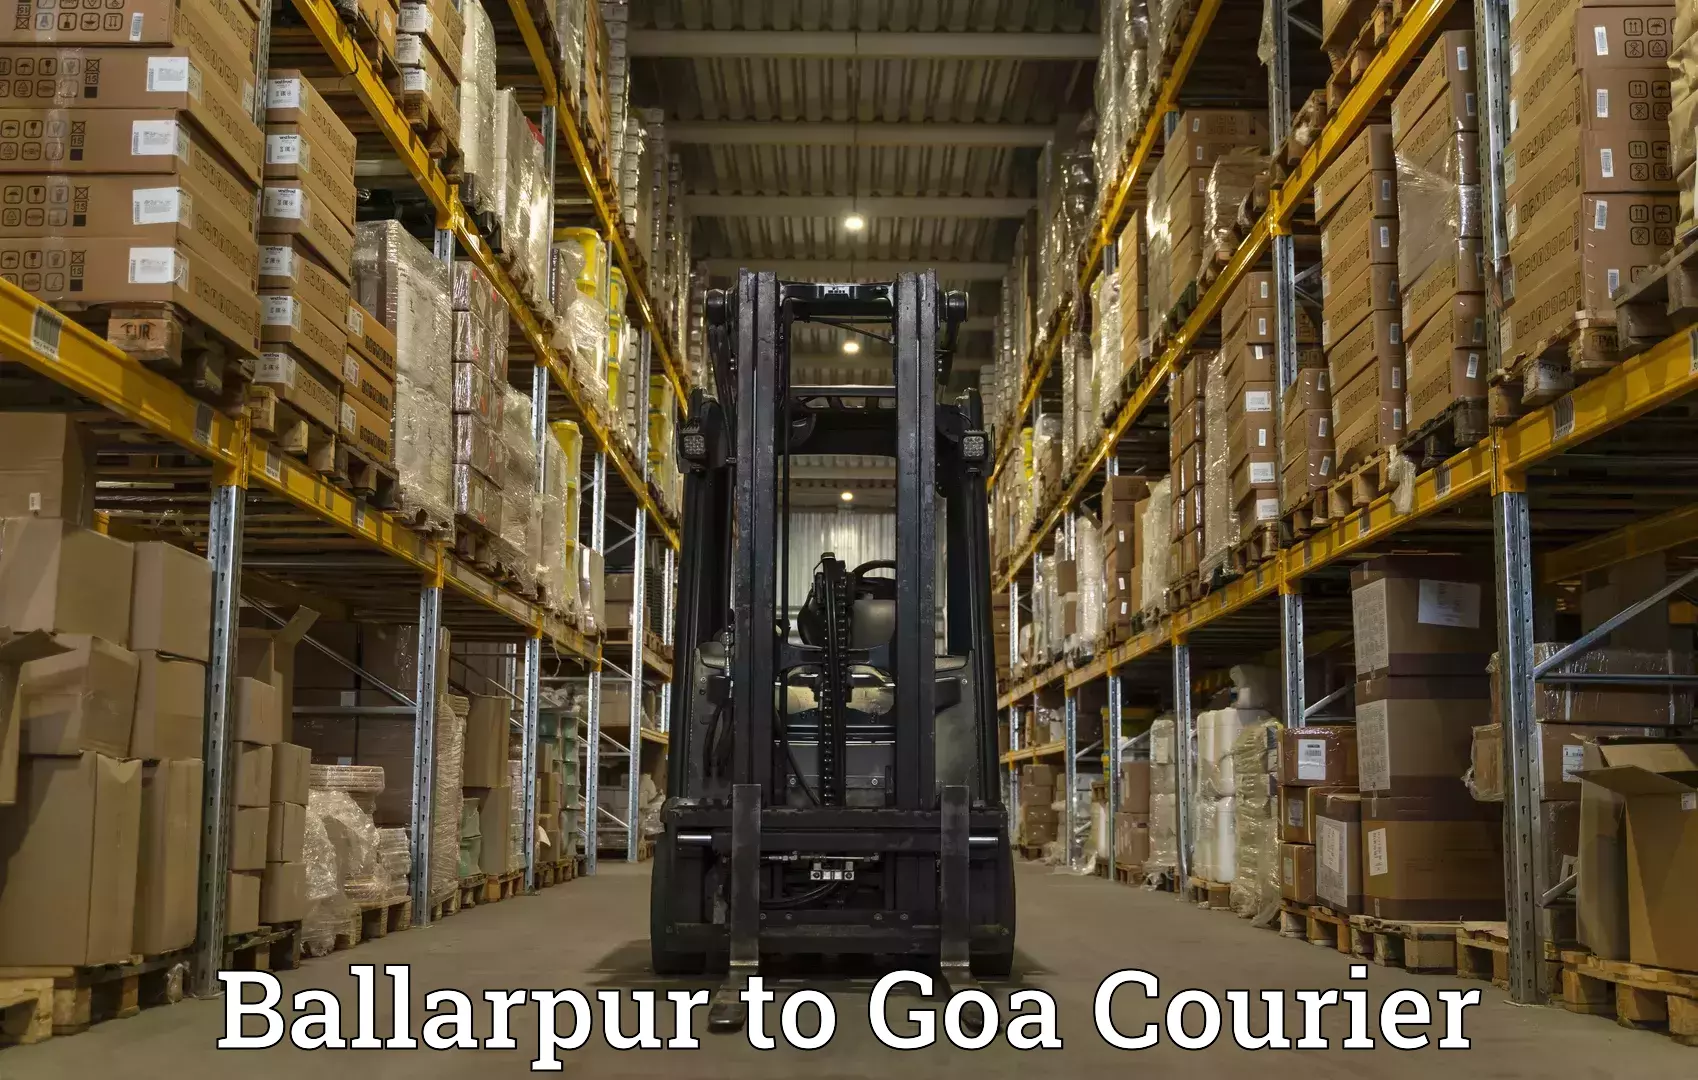 Reliable courier services Ballarpur to Panaji